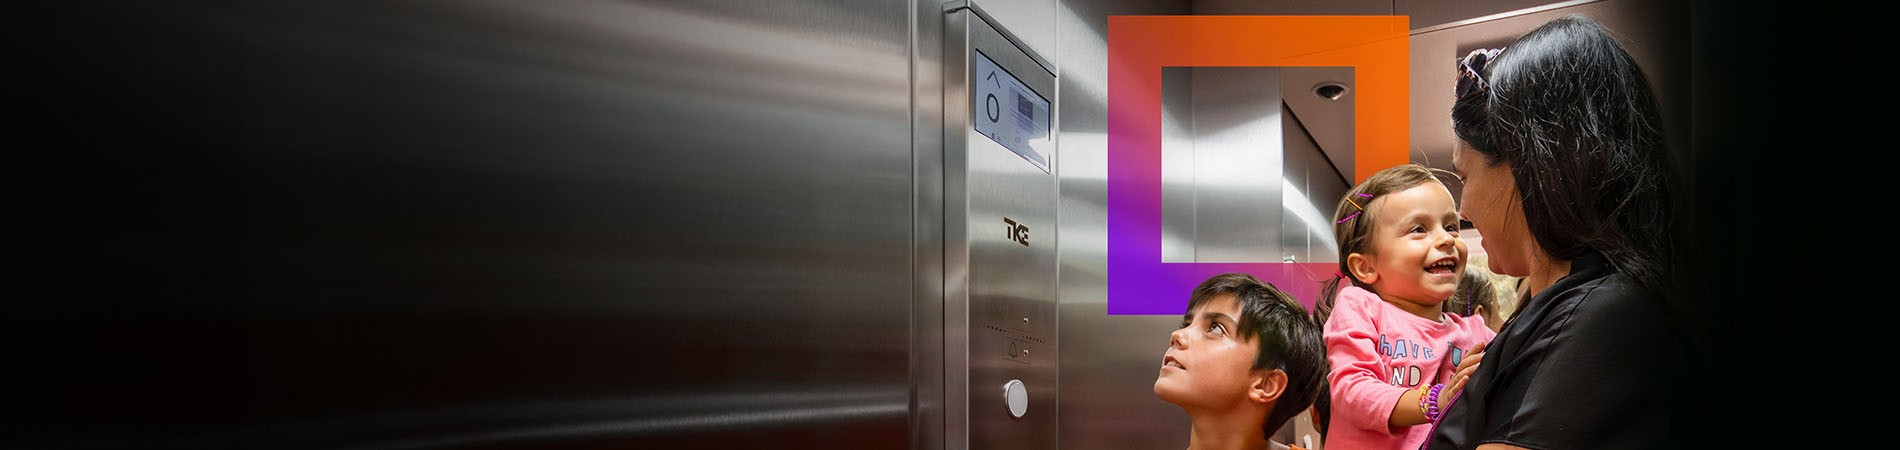 
		El nuevo ascensor eco-eficiente y digital
